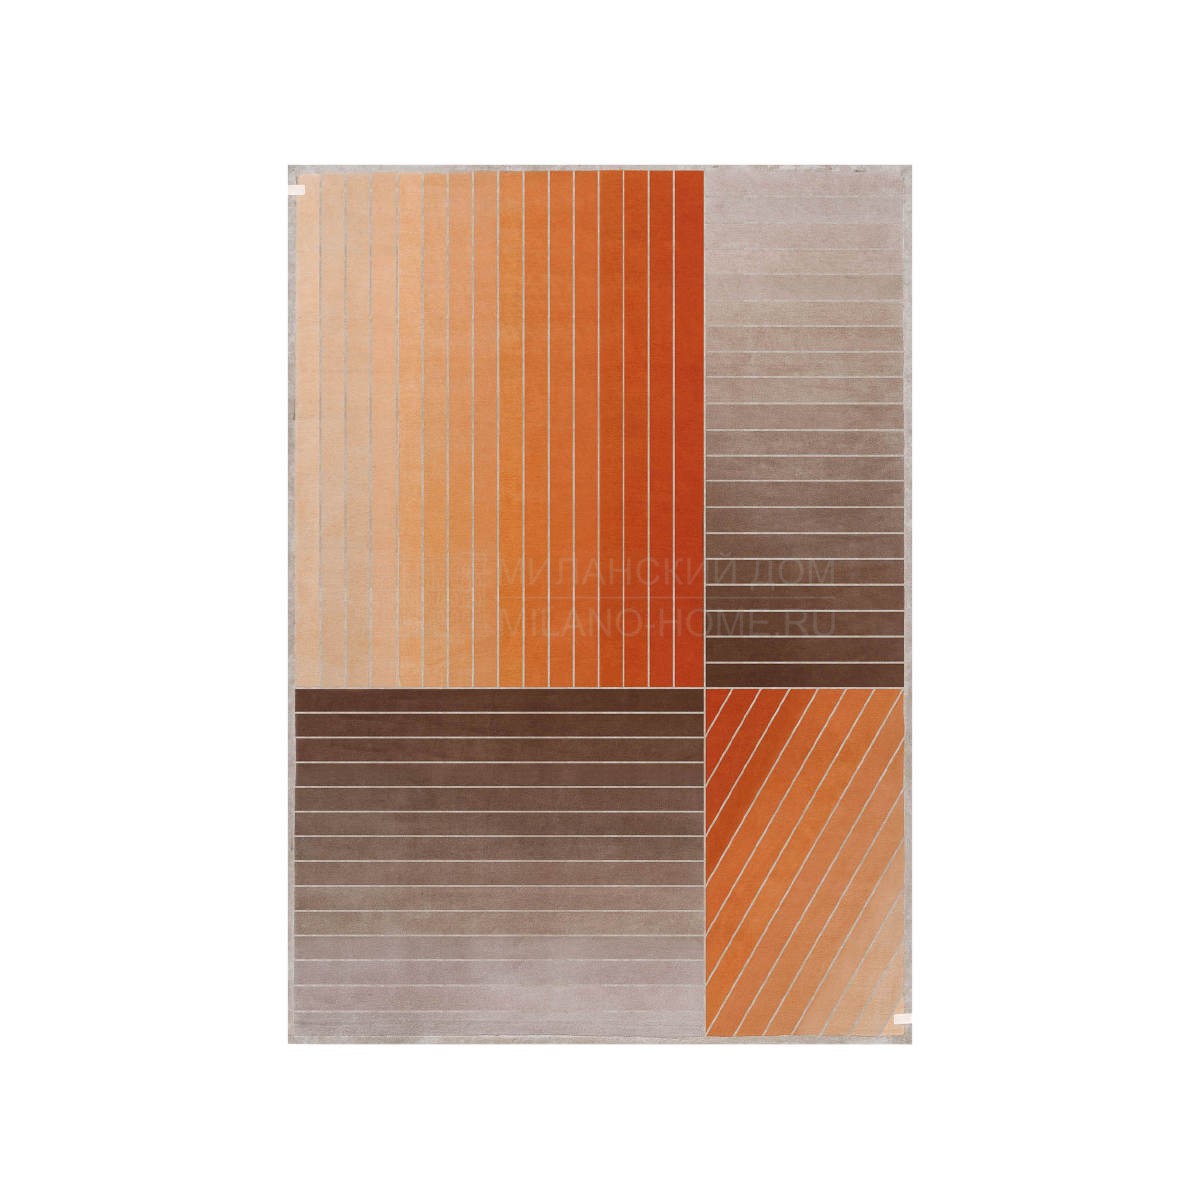 Ковер Madison orange striped carpet из Италии фабрики TURRI